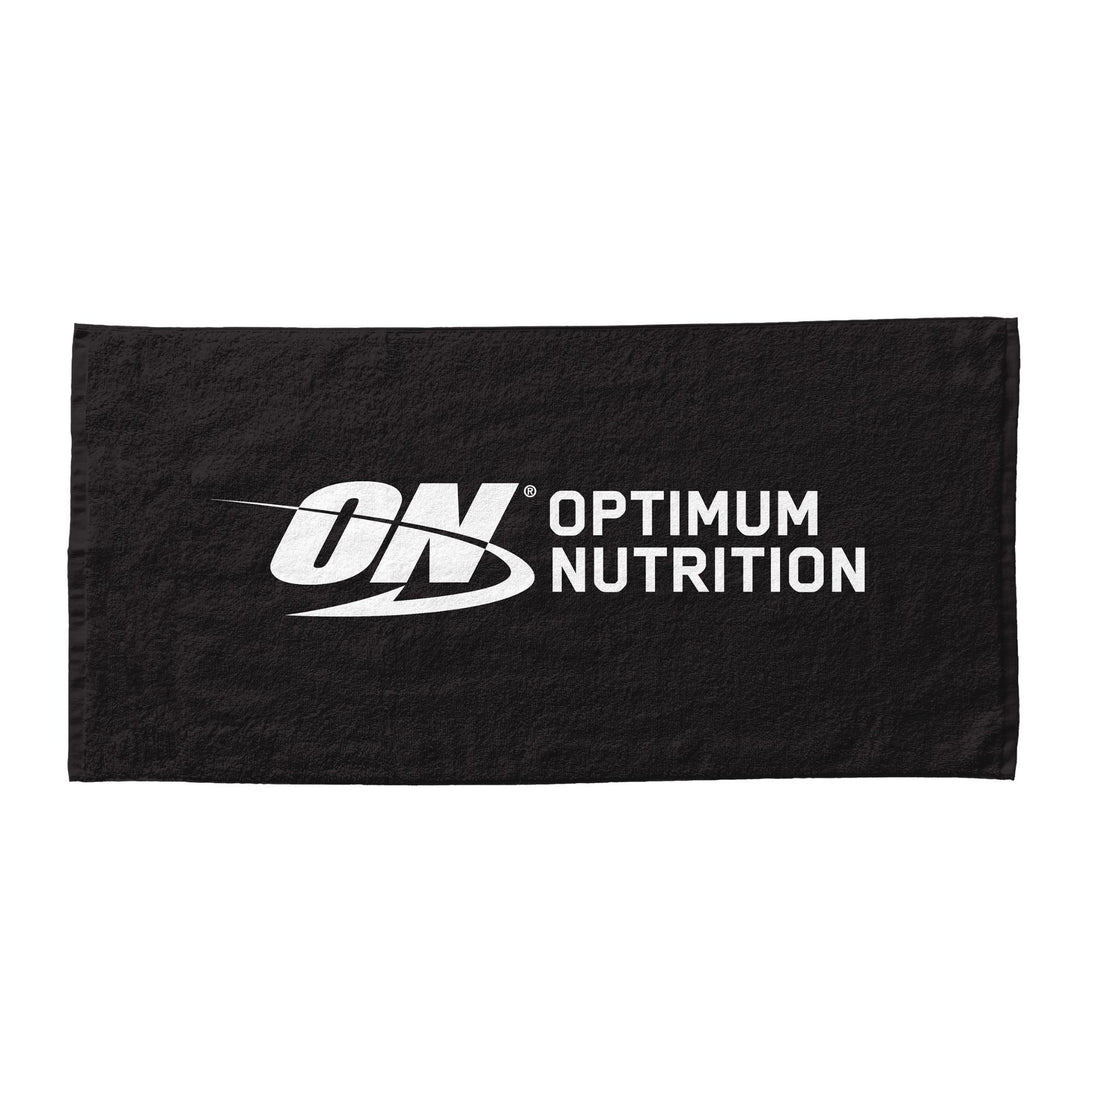 Optimum Nutrition Gym Towel Do You Even